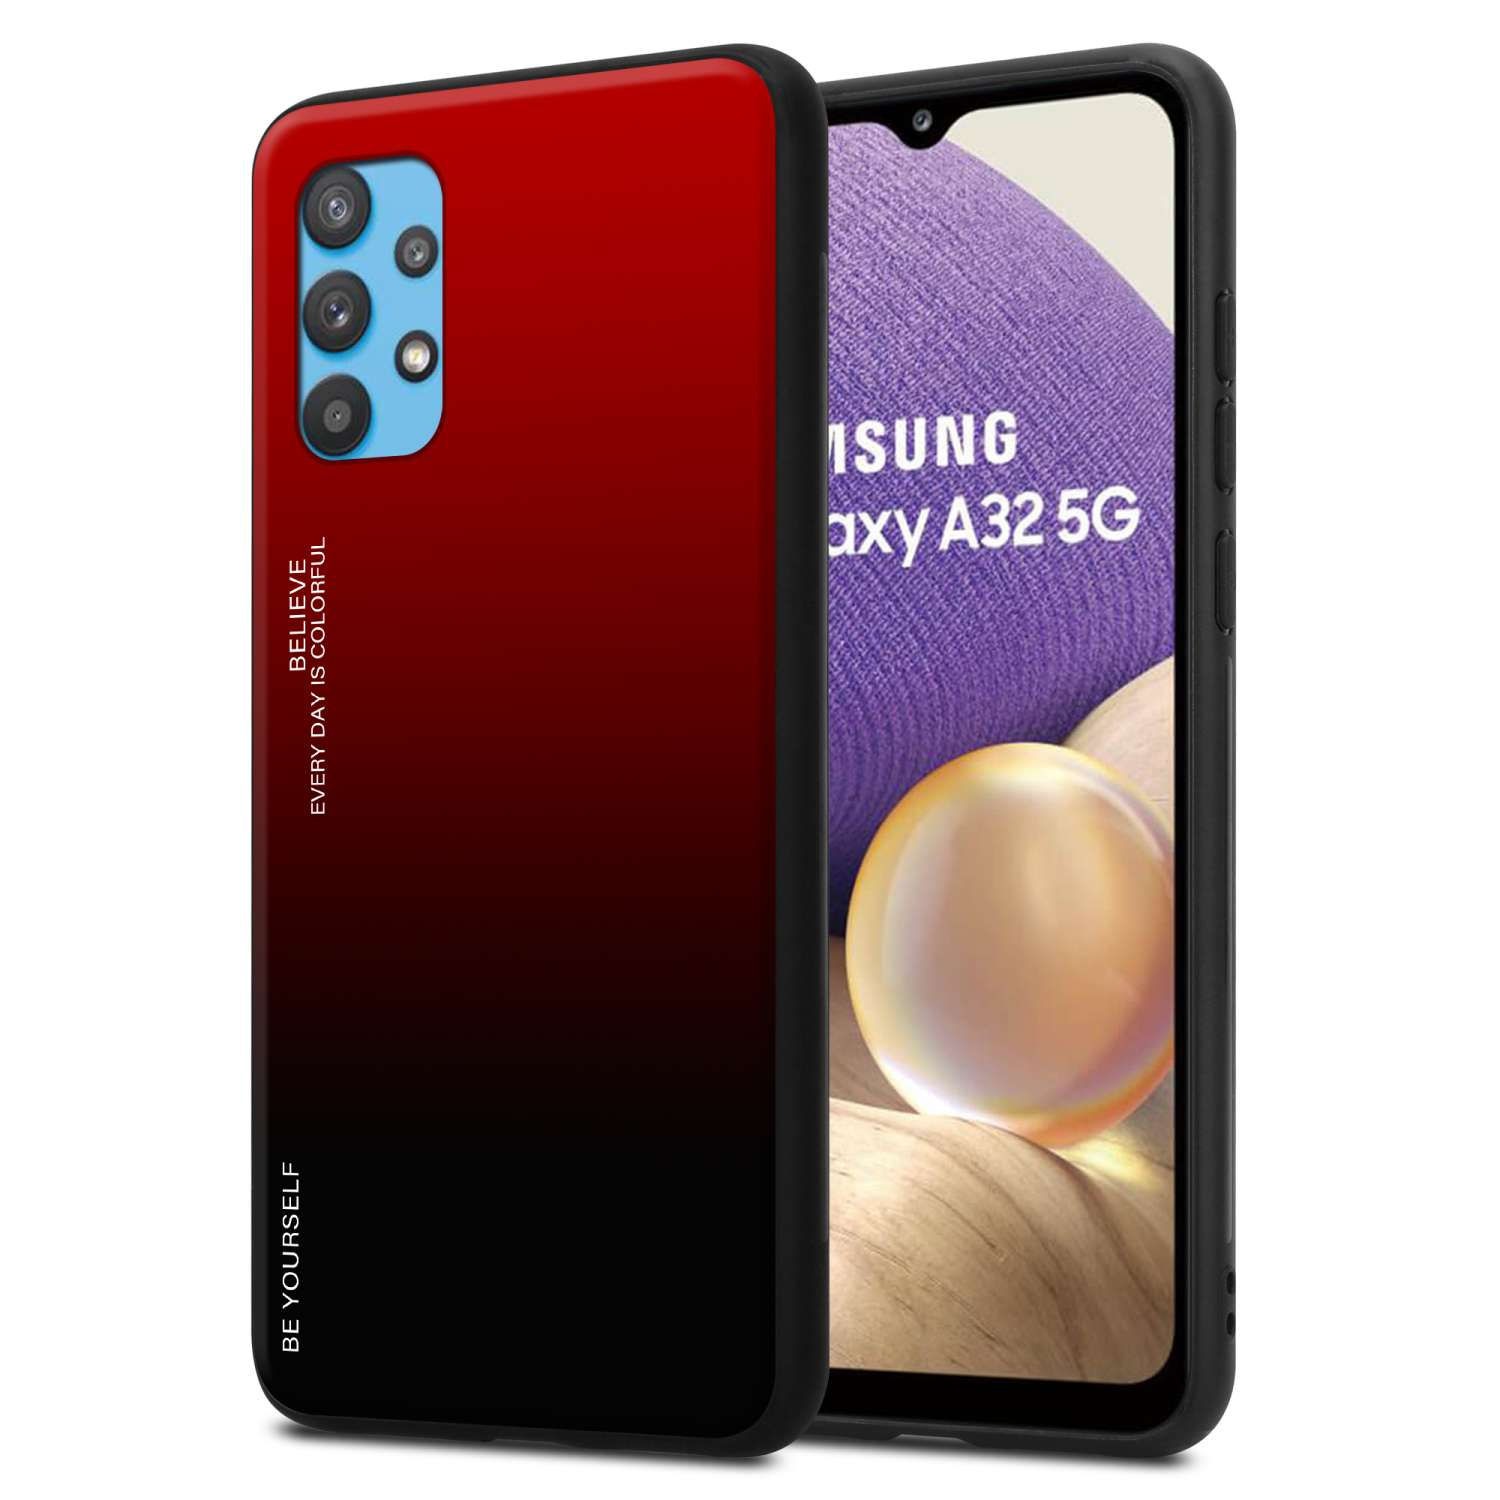 Glas, 5G, Galaxy Samsung, A32 Hülle Backcover, Farben ROT - 2 CADORABO SCHWARZ aus TPU Silikon